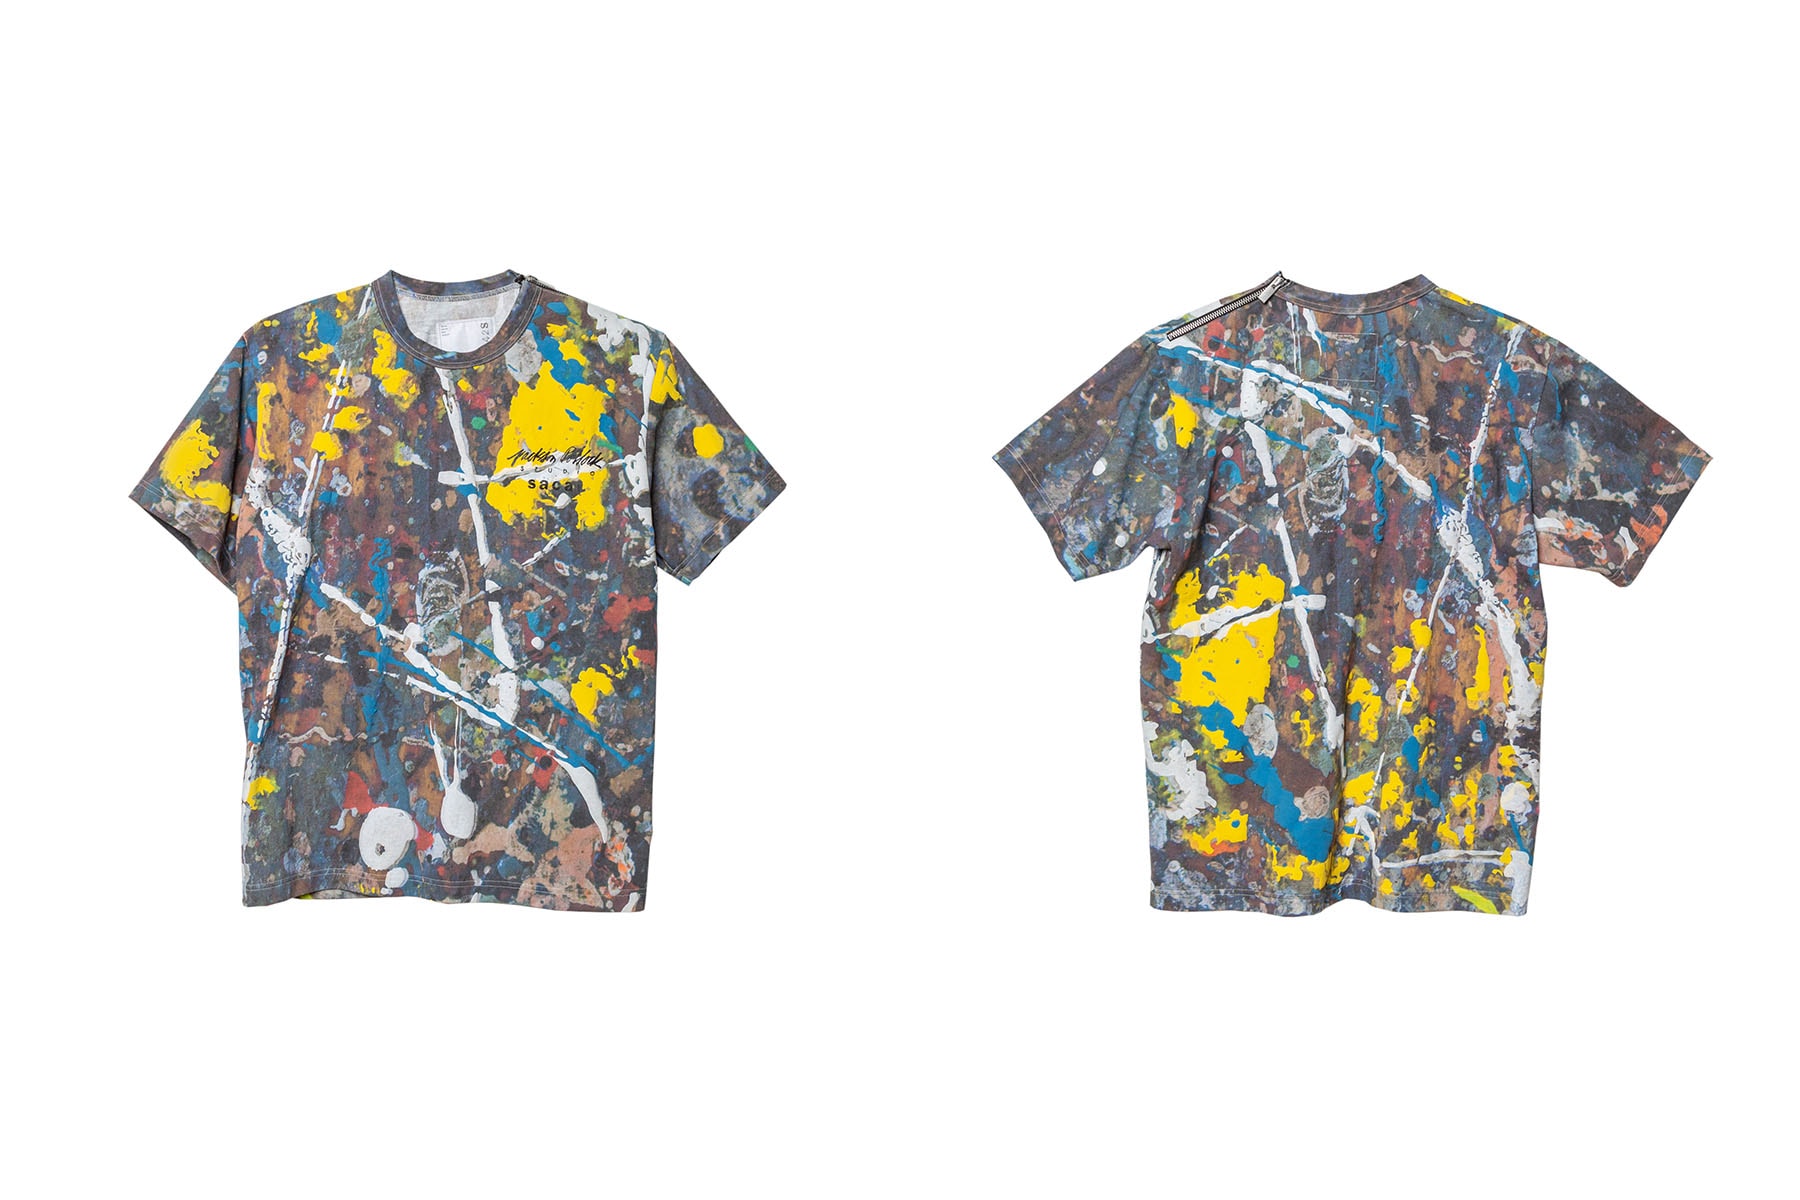 サカイ x ジャクソン ポロック スタジオ sacai が“抽象表現主義”アートを代表する Jackson Pollock Studio とのコラボアイテムをリリース